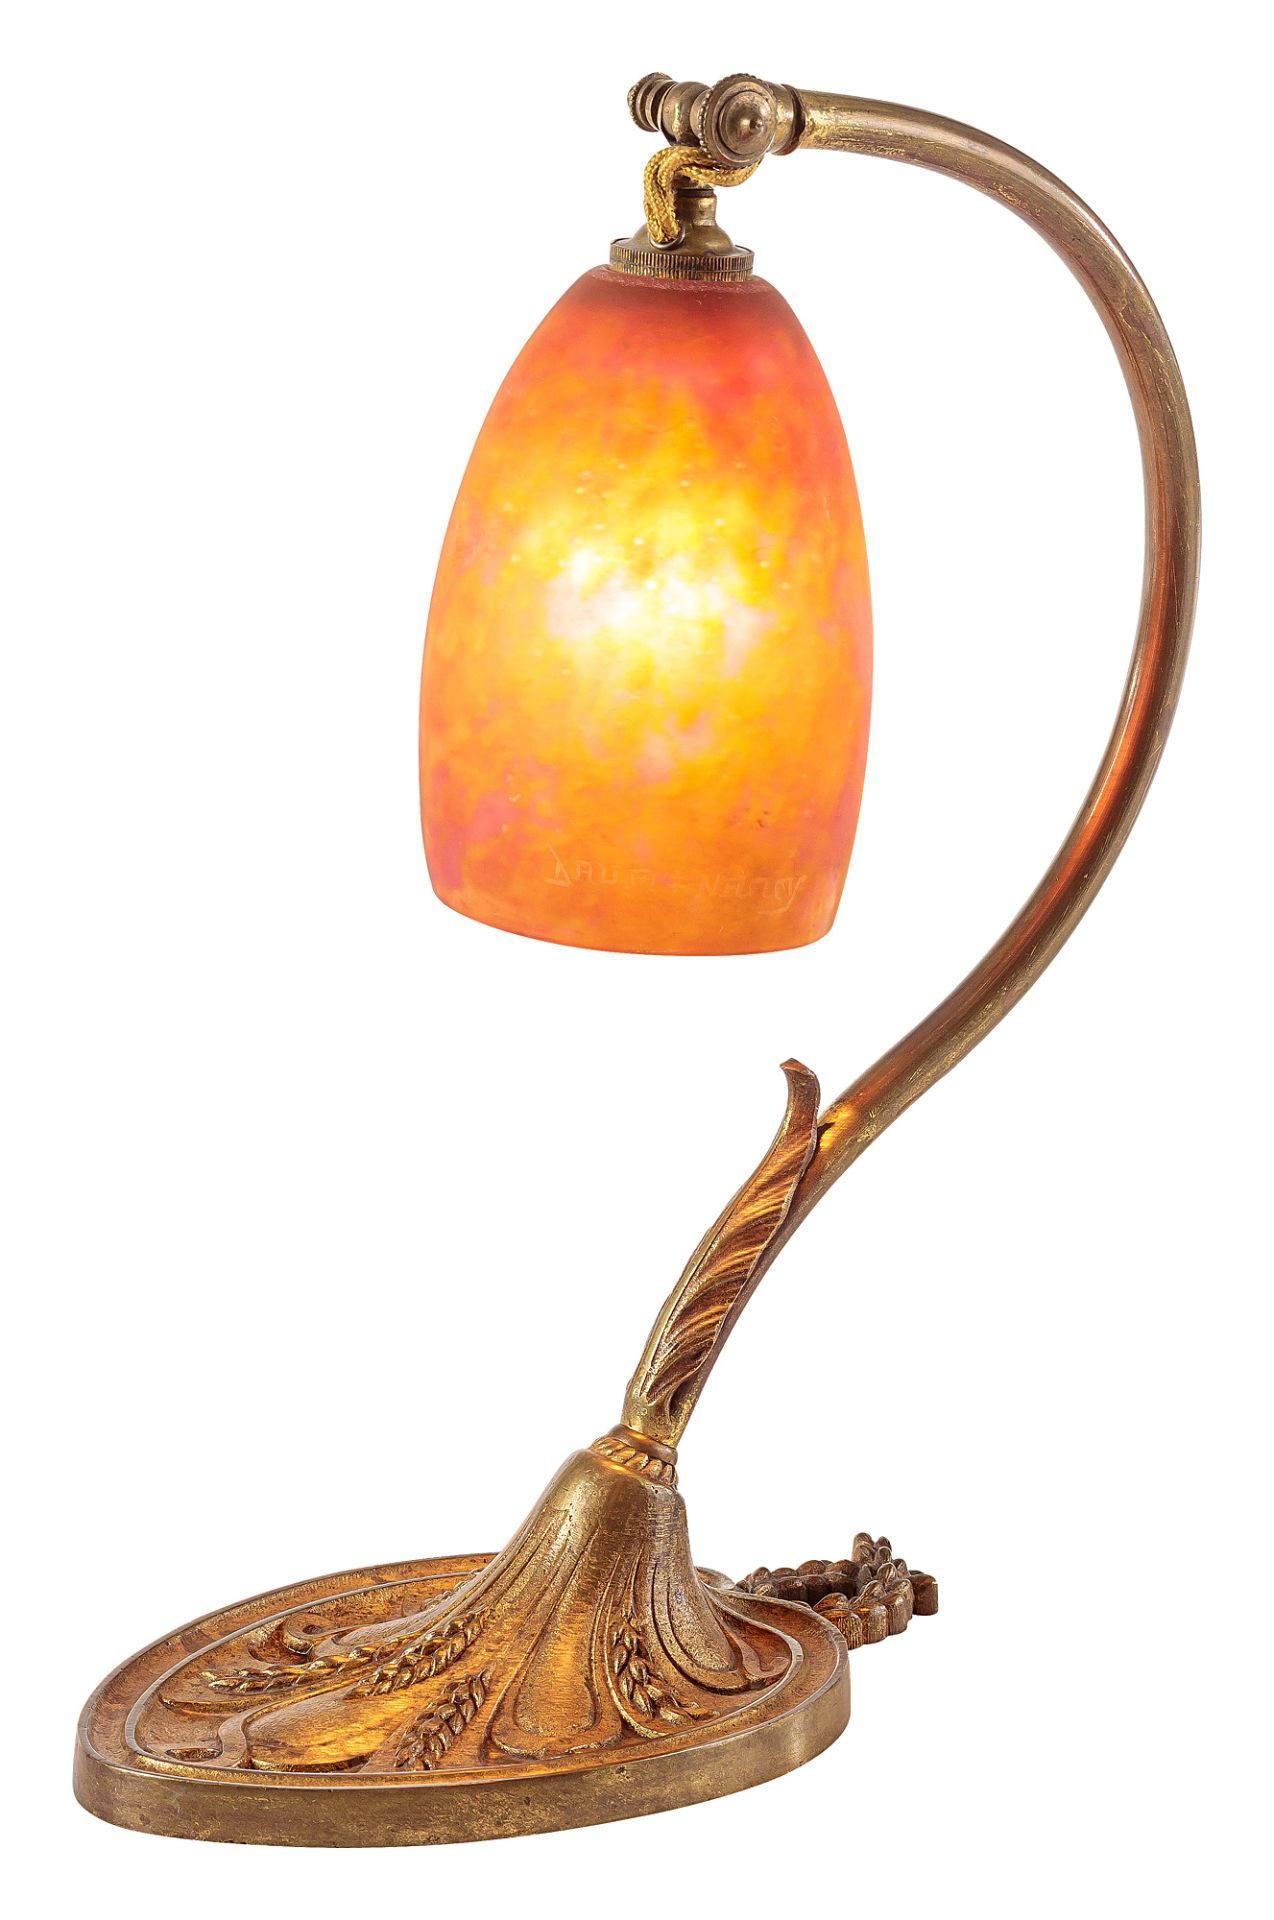 Daum Frères Art Nouveau table lamp with ear decor - Image 2 of 3